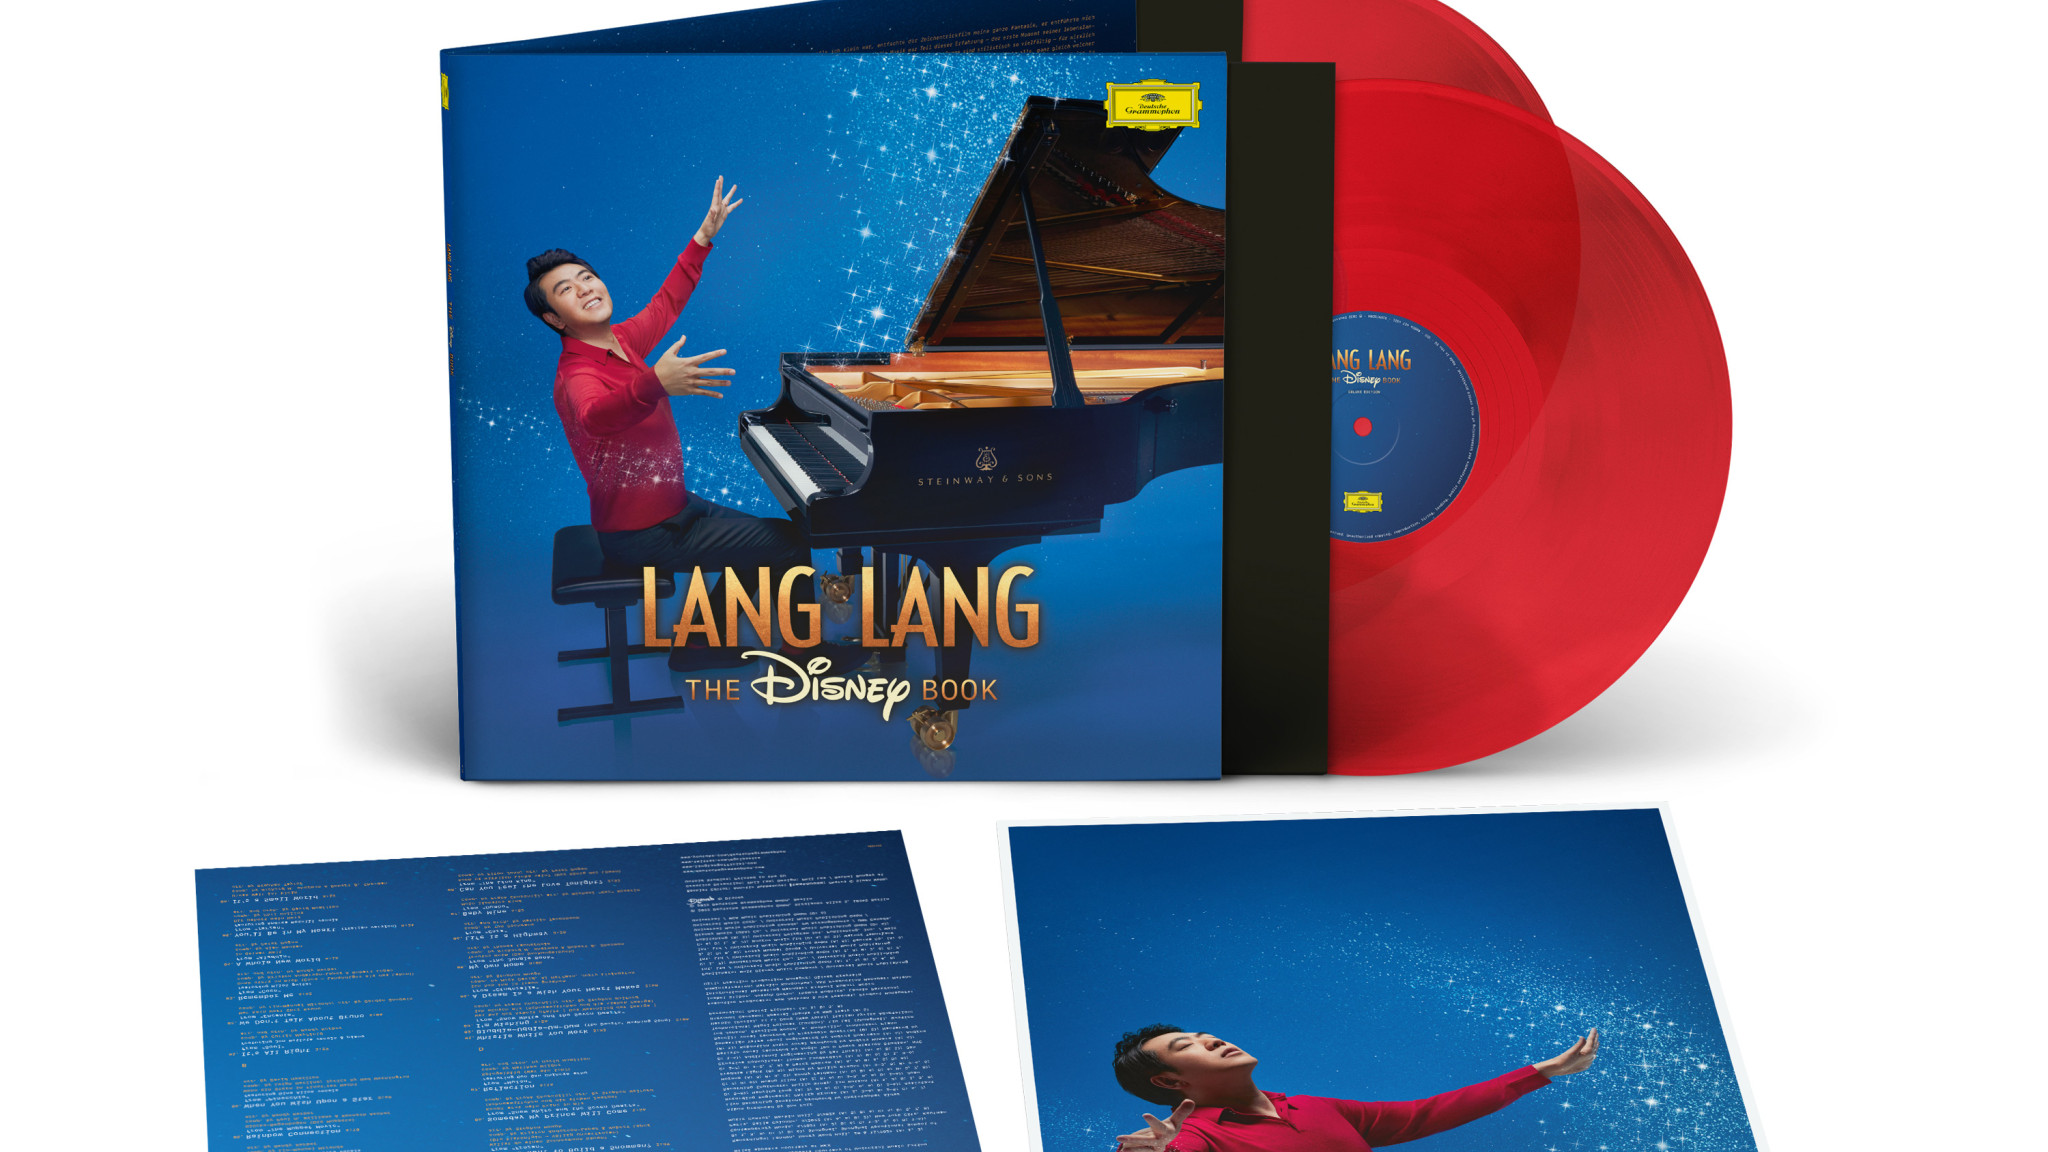 Neuheiten im DG Store: Exklusives farbiges Vinyl-Set von Lang Langs „The Disney Book“ u.v.m.